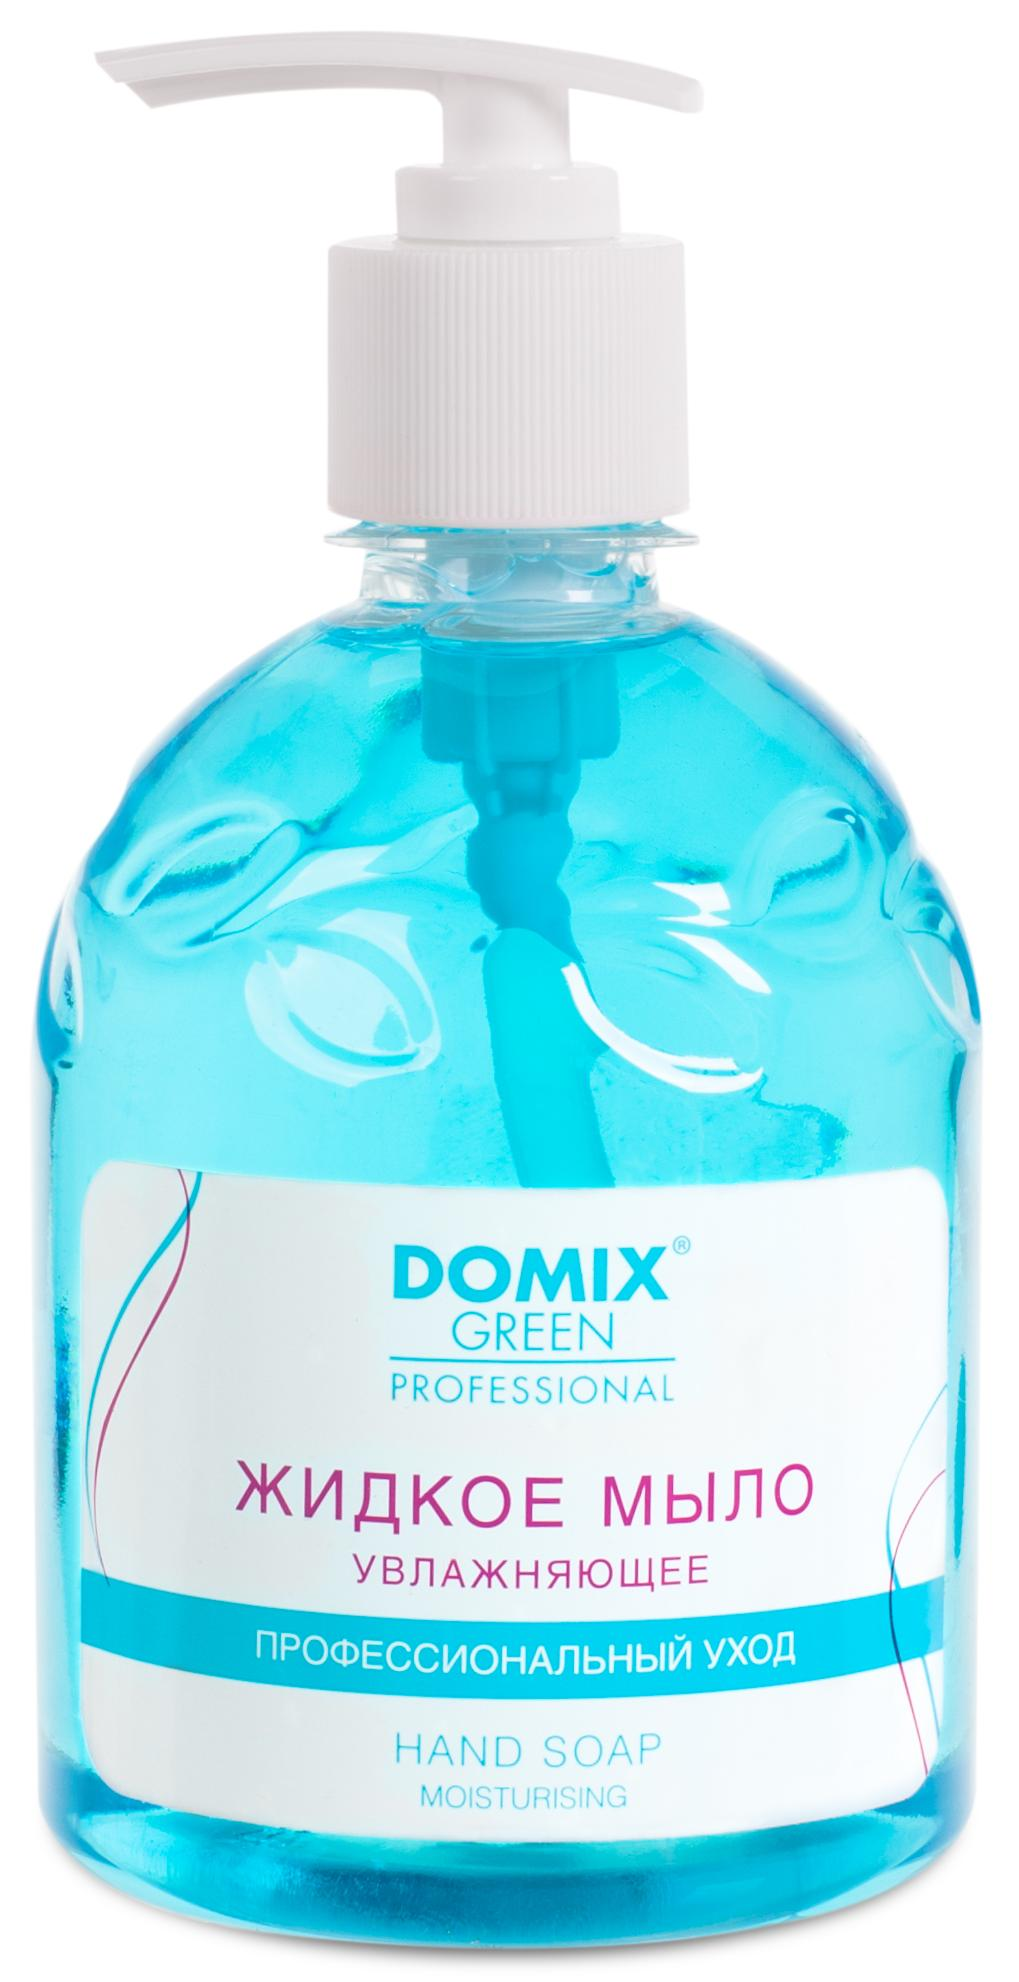 DOMIX Мыло жидкое увлажняющее для профессионального ухода / DGP 500 мл felce azzurra жидкое мыло увлажнение белый мускус moisturizing white musk liquid soap